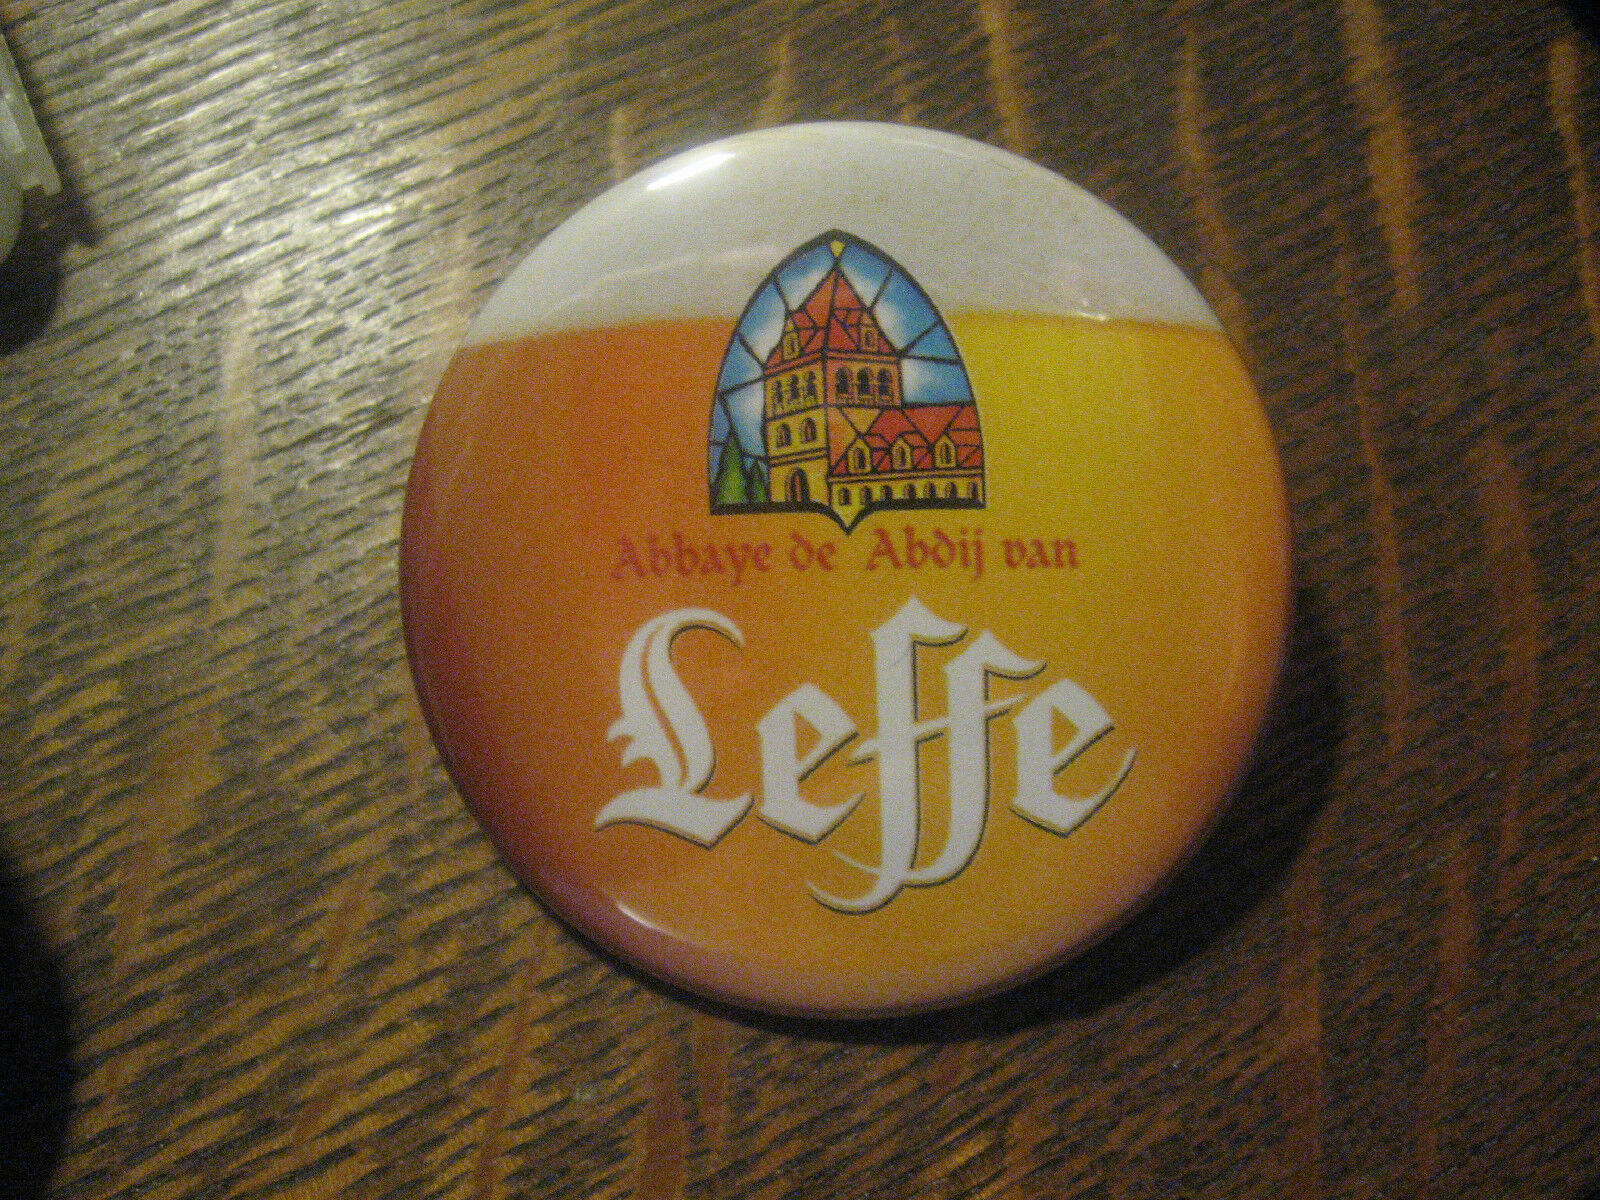 Leffe Blonde Beer Abbaye de Belgium Brewery Pint Advertisement Button Pin $20